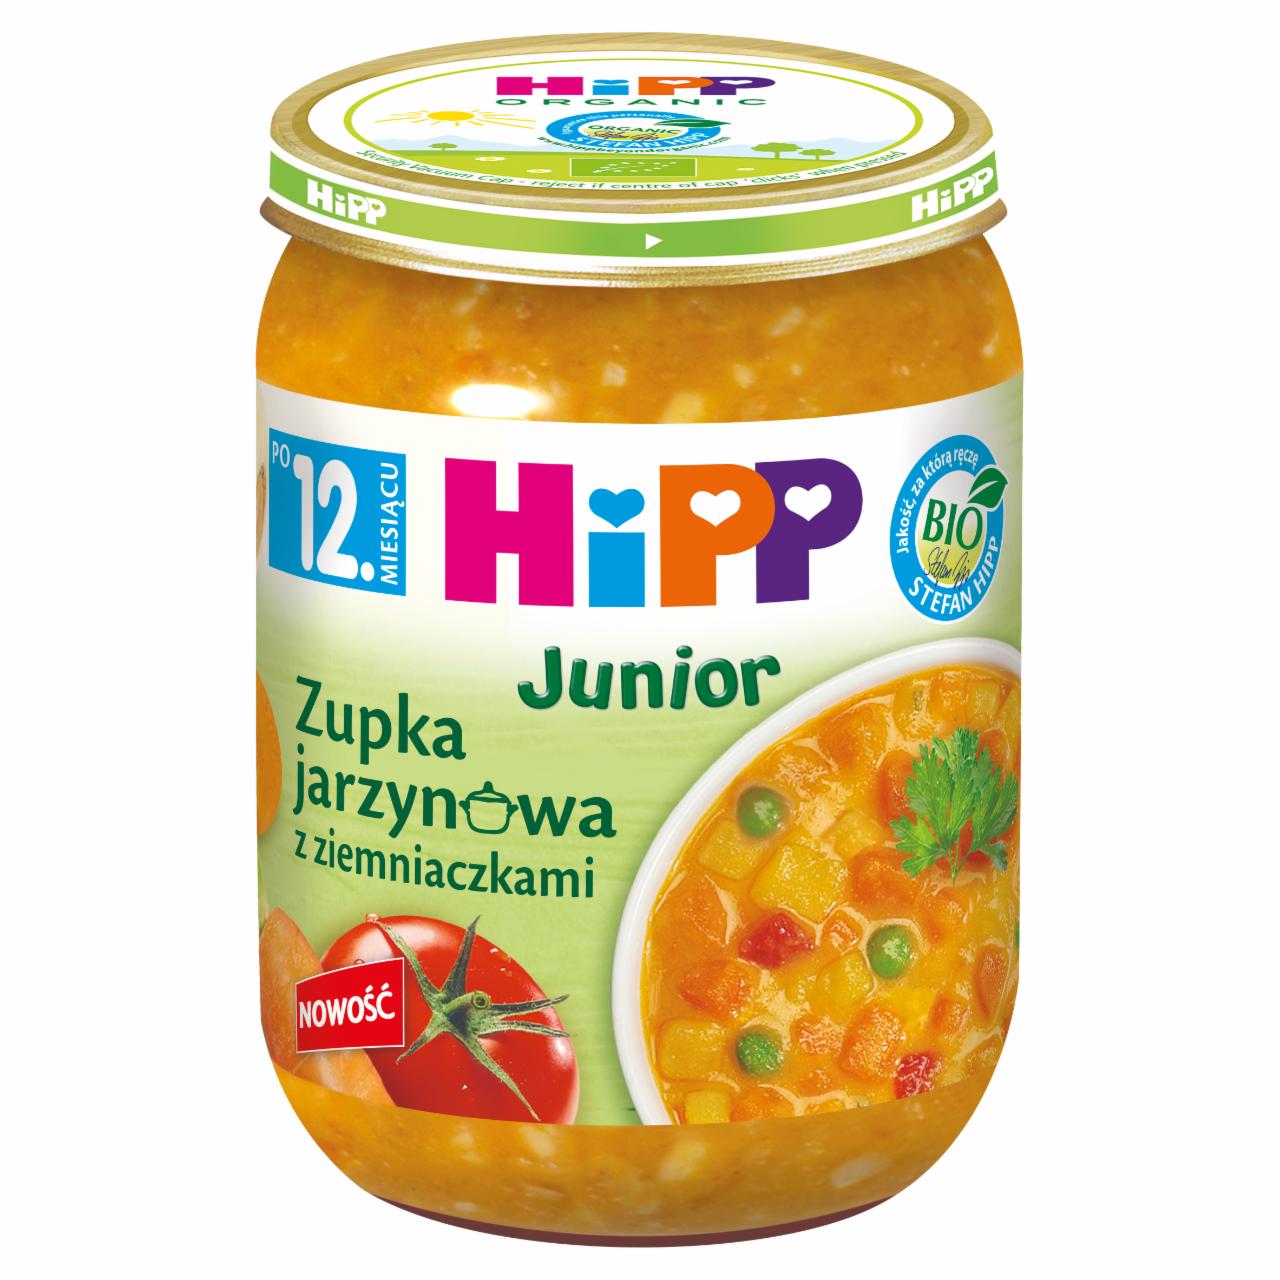 Zdjęcia - HiPP BIO Junior Zupka jarzynowa z ziemniaczkami po 12. miesiącu 250 g